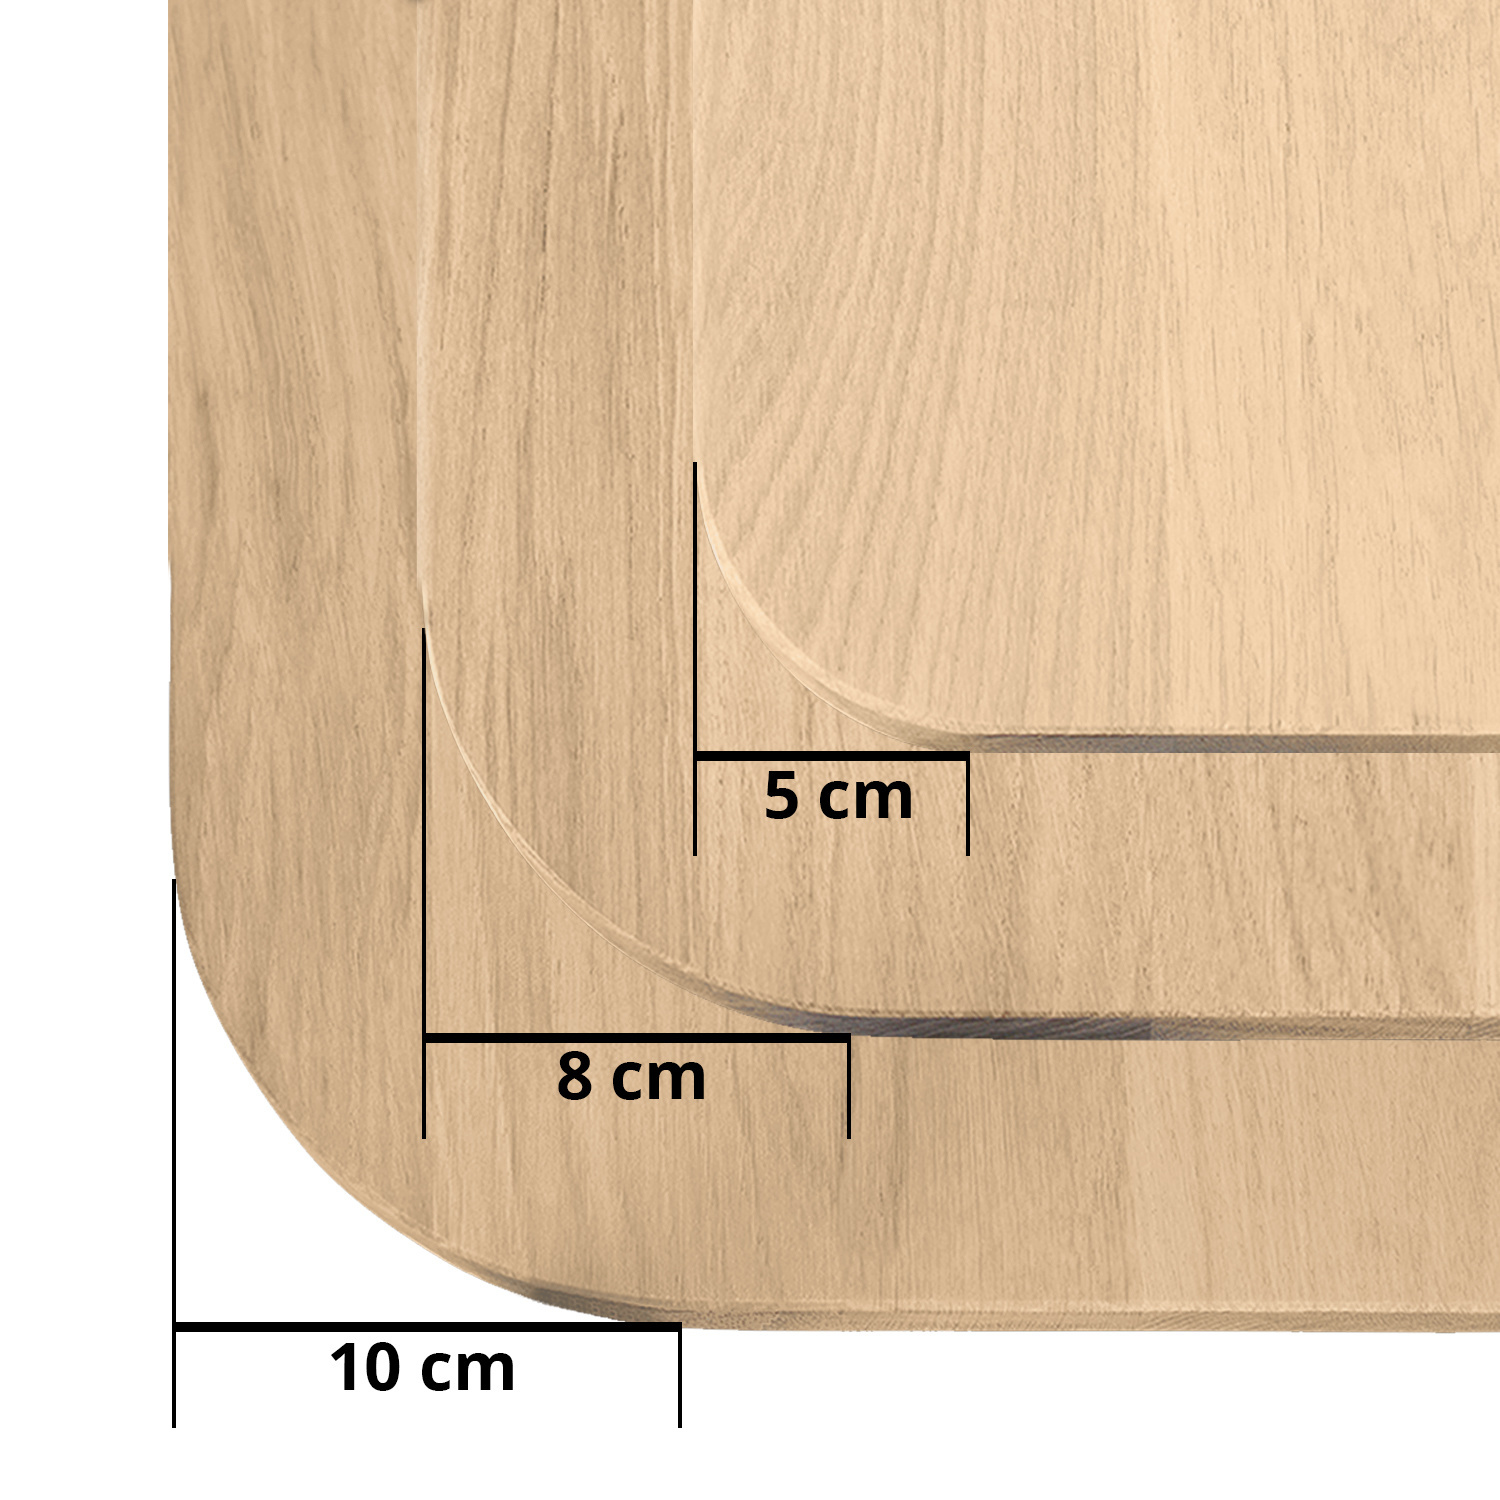  Eiken tafelblad met ronde hoeken op maat - 2,7 cm dik (1-laag) - rustiek Europees eikenhout - met brede lamellen (circa 10-12 cm) - verlijmd kd 8-12% - 50-120x50-248 cm